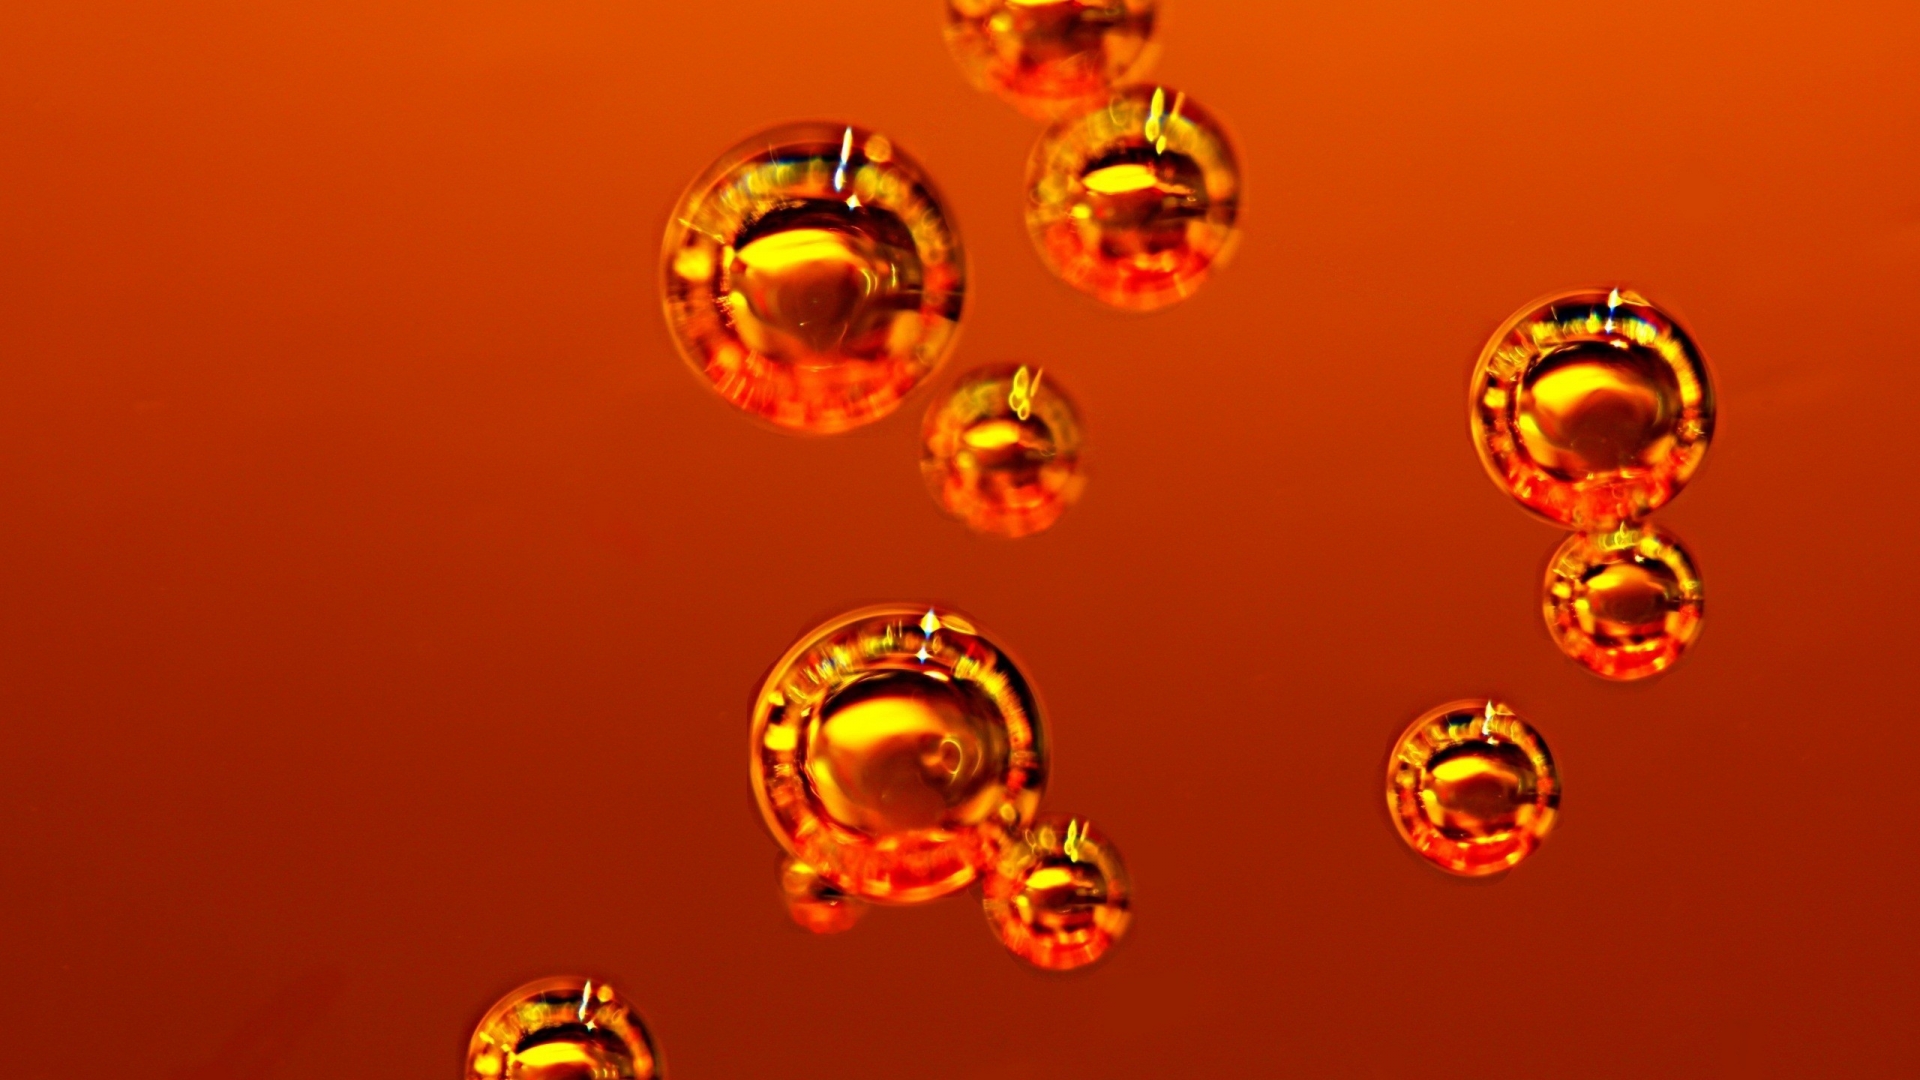 Orange Bubbles for 1920 x 1080 HDTV 1080p resolution